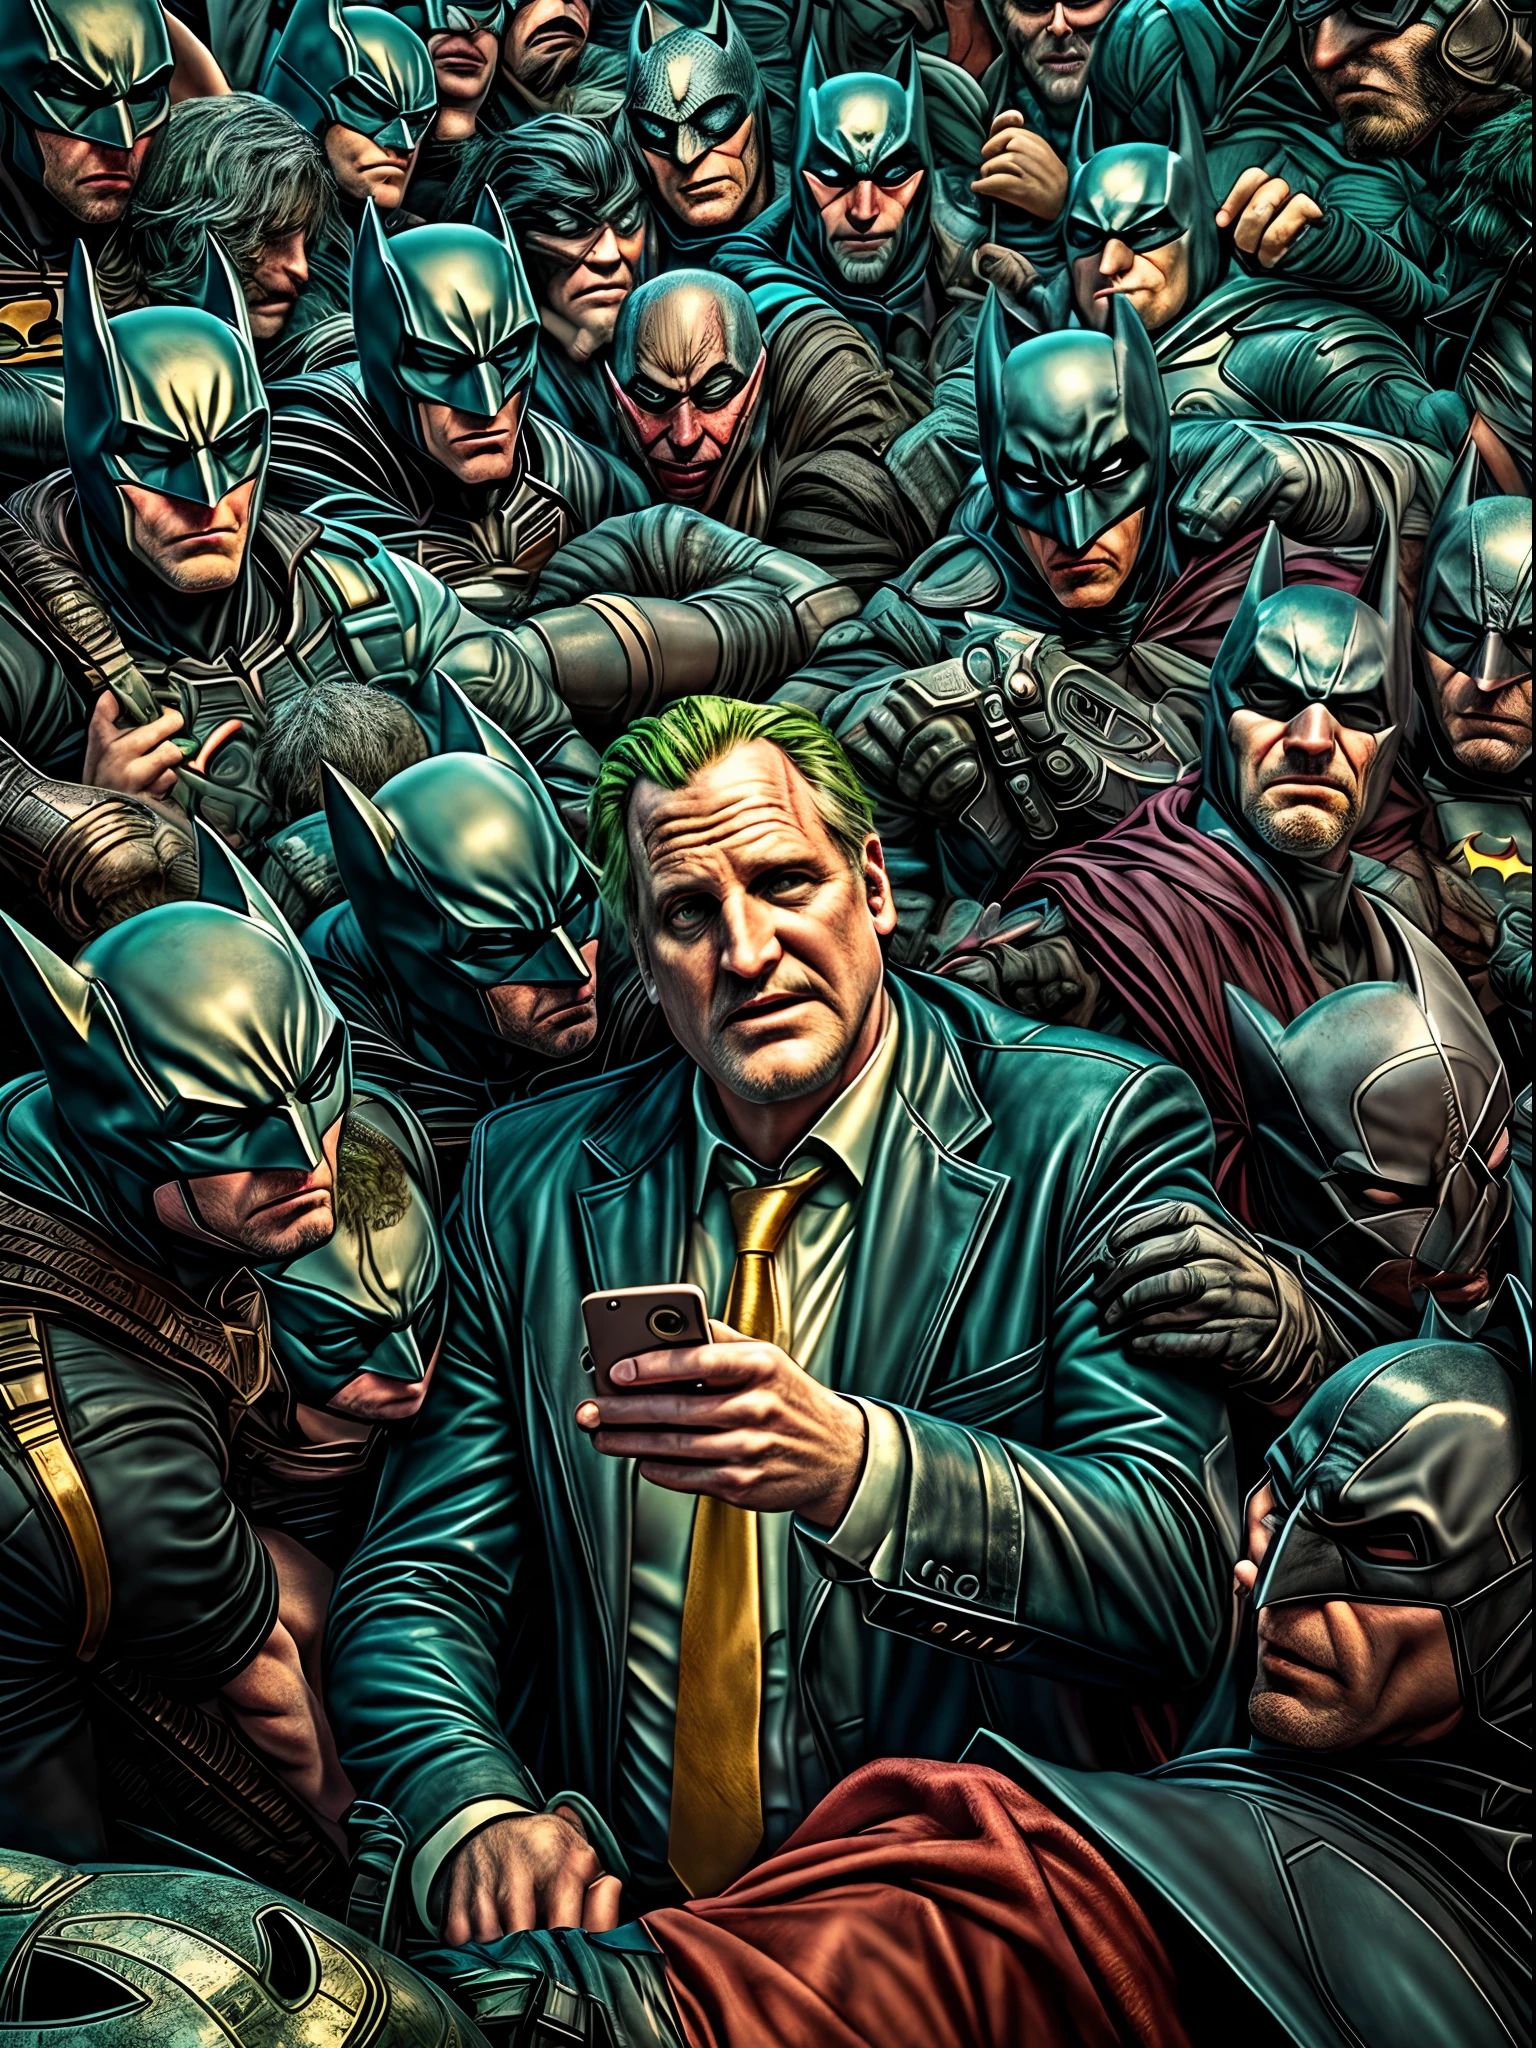 Jeff Daniels se hace un selfie de Batman con los fans del Joker. capa negra con el logo dorado de Batman, Surrealism, anáglifo, estereograma, tachi-e, tirar, perspectiva atmosférica, 8K, Súper detalle, preciso, mejor calidad, En Gotham City, Tema escrutado, encuadre perfecto, arte Moderno, corbata morada, cara seria, fondo complejo, [[negro y oro]], atmósfera gris pizarra, Iluminación perfecta, sombreado perfecto, (photoRealista:1.6), épico, Realista, desteñido, colores neutros, ((((hdr)))), ((((colores apagados)))), Intrincado scene, por bugmAIster, estación de arte, hiperdetallado, toma cinematográfica, luces cálidas, luz dramática, Intrincado details, Viñeta, renderizado de octanaje, Motor irreal, muy detallado, Intrincado